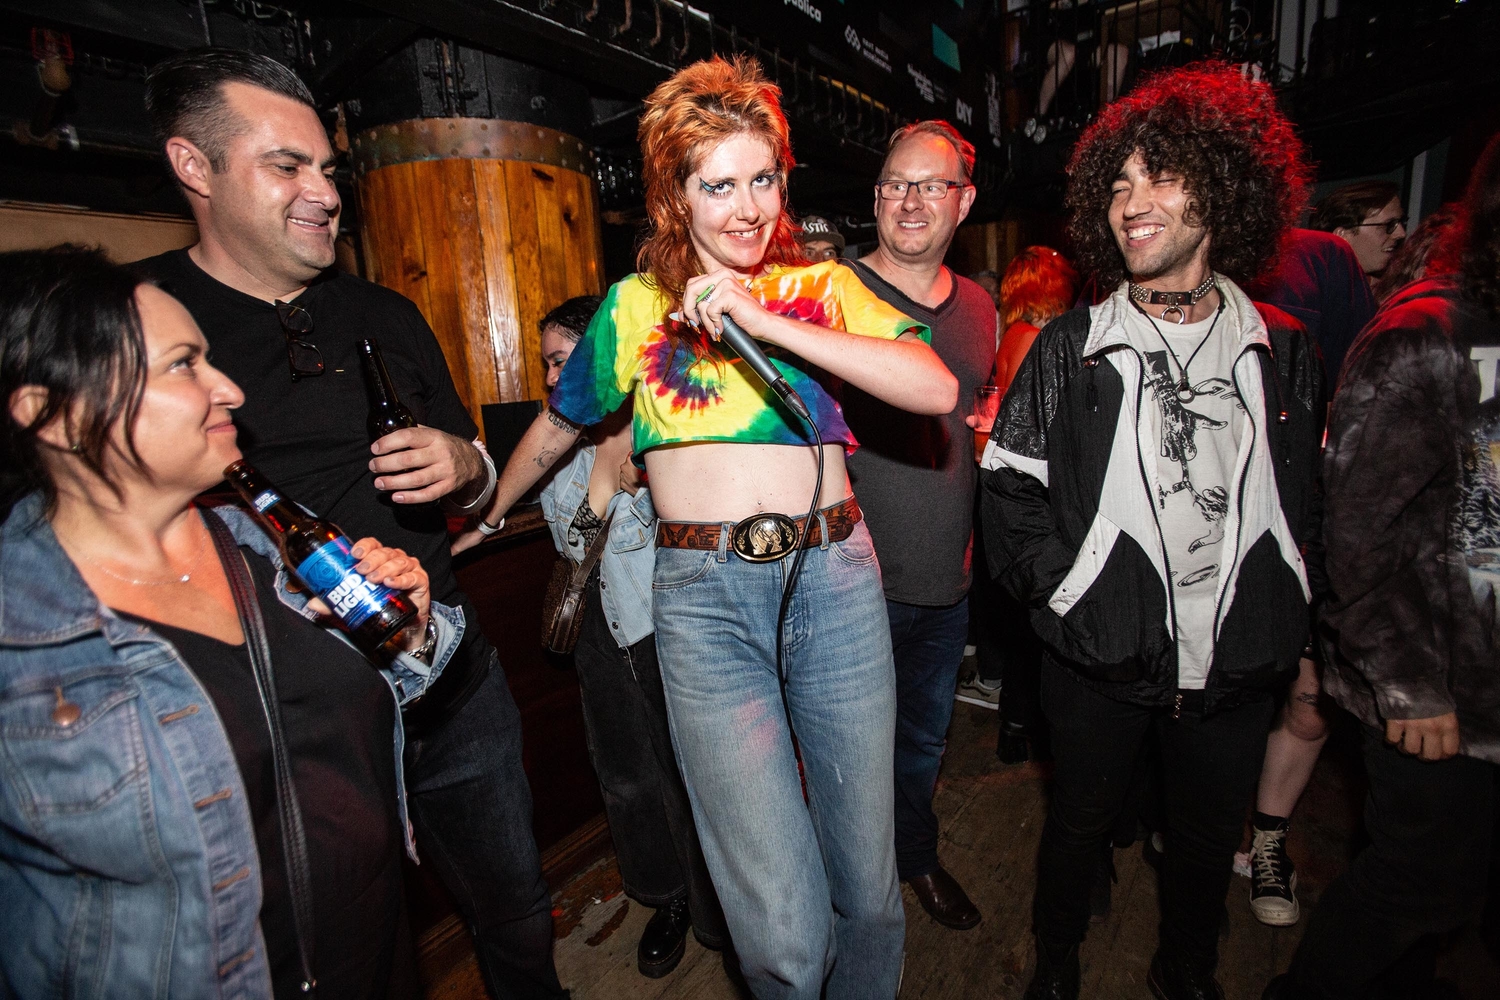 Surfbort, Gurr and Leoniden shine at Reeperbahn Festival NYC showcase